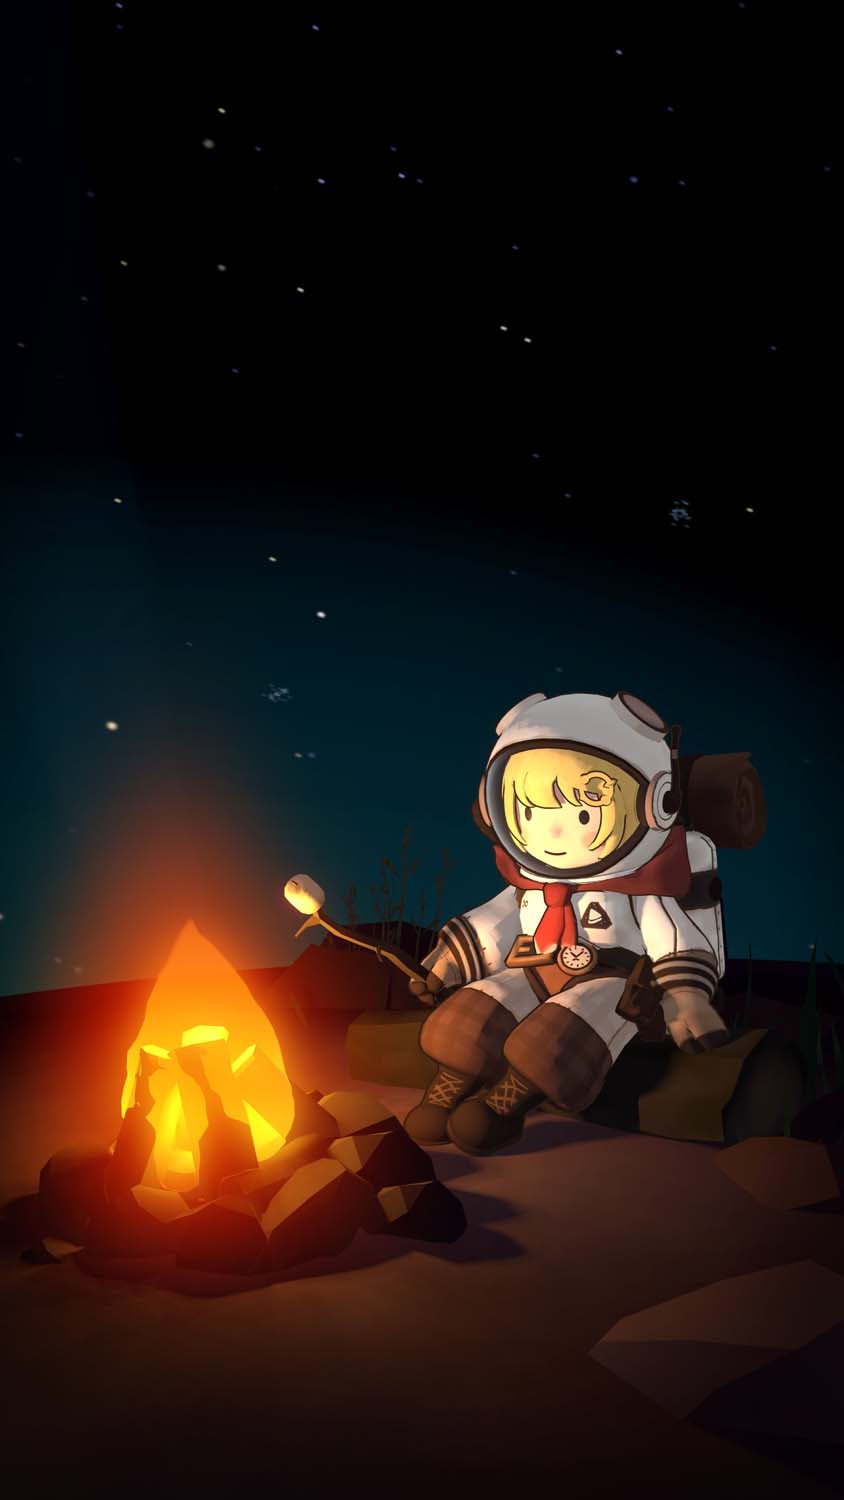 Little Astronaut Camp Fire iPhone Wallpaper HD